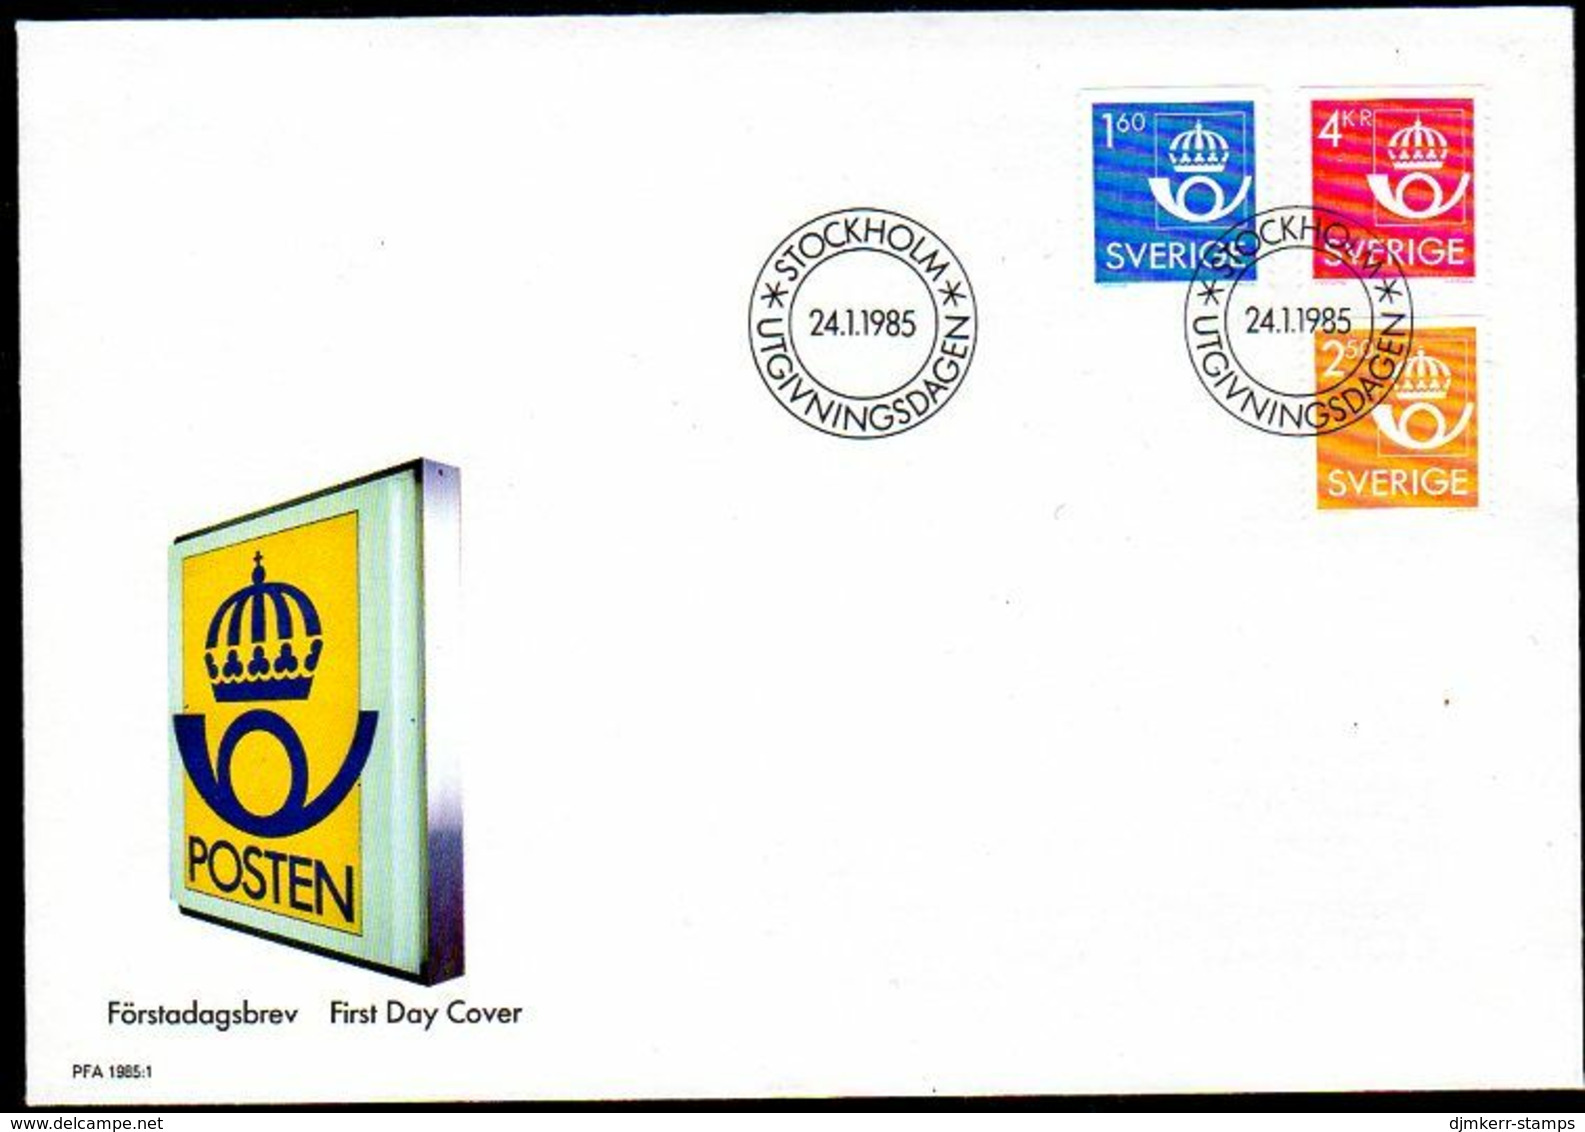 SWEDEN 1985 Definitive: Postal Emblem FDC. Michel 1316-18 - FDC